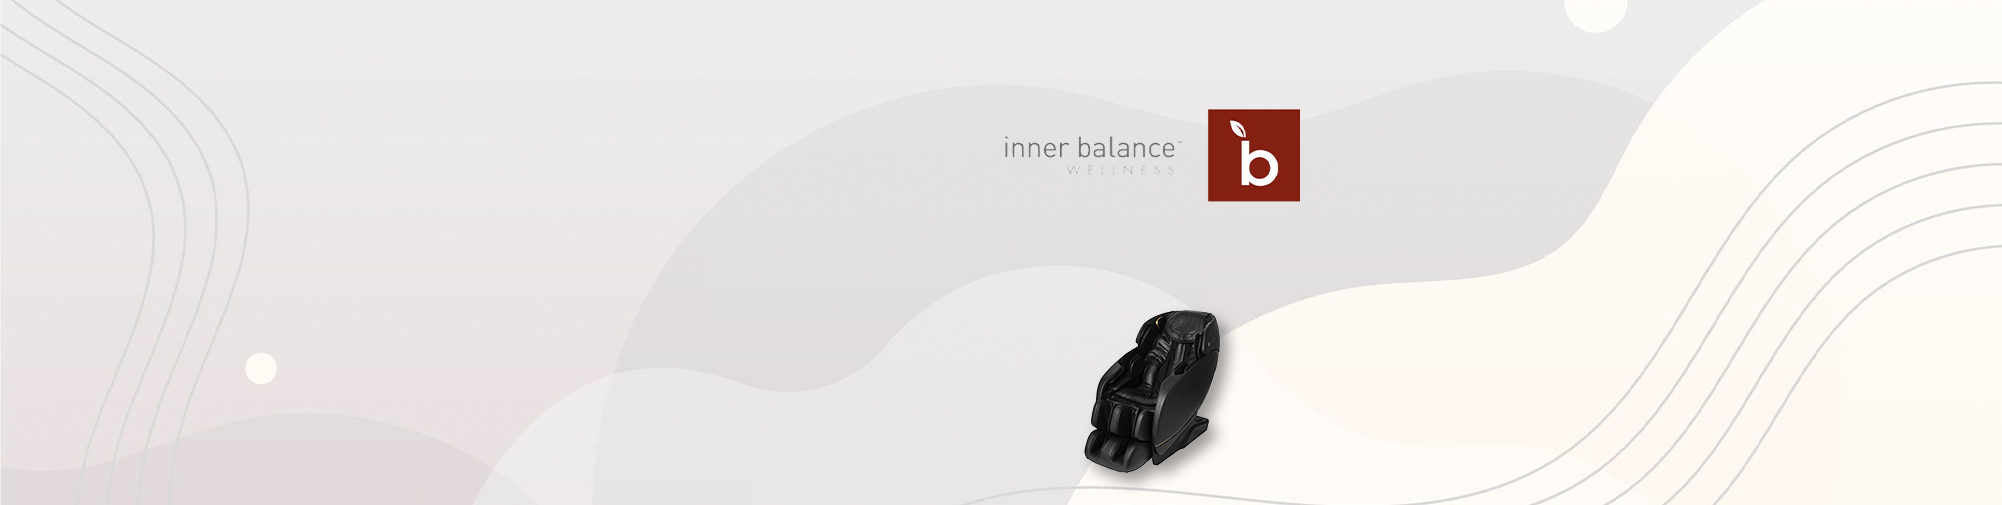 Inner Balance - mükemmel masaj koltuğu üretimi | Masaj Koltuğu Dünyası